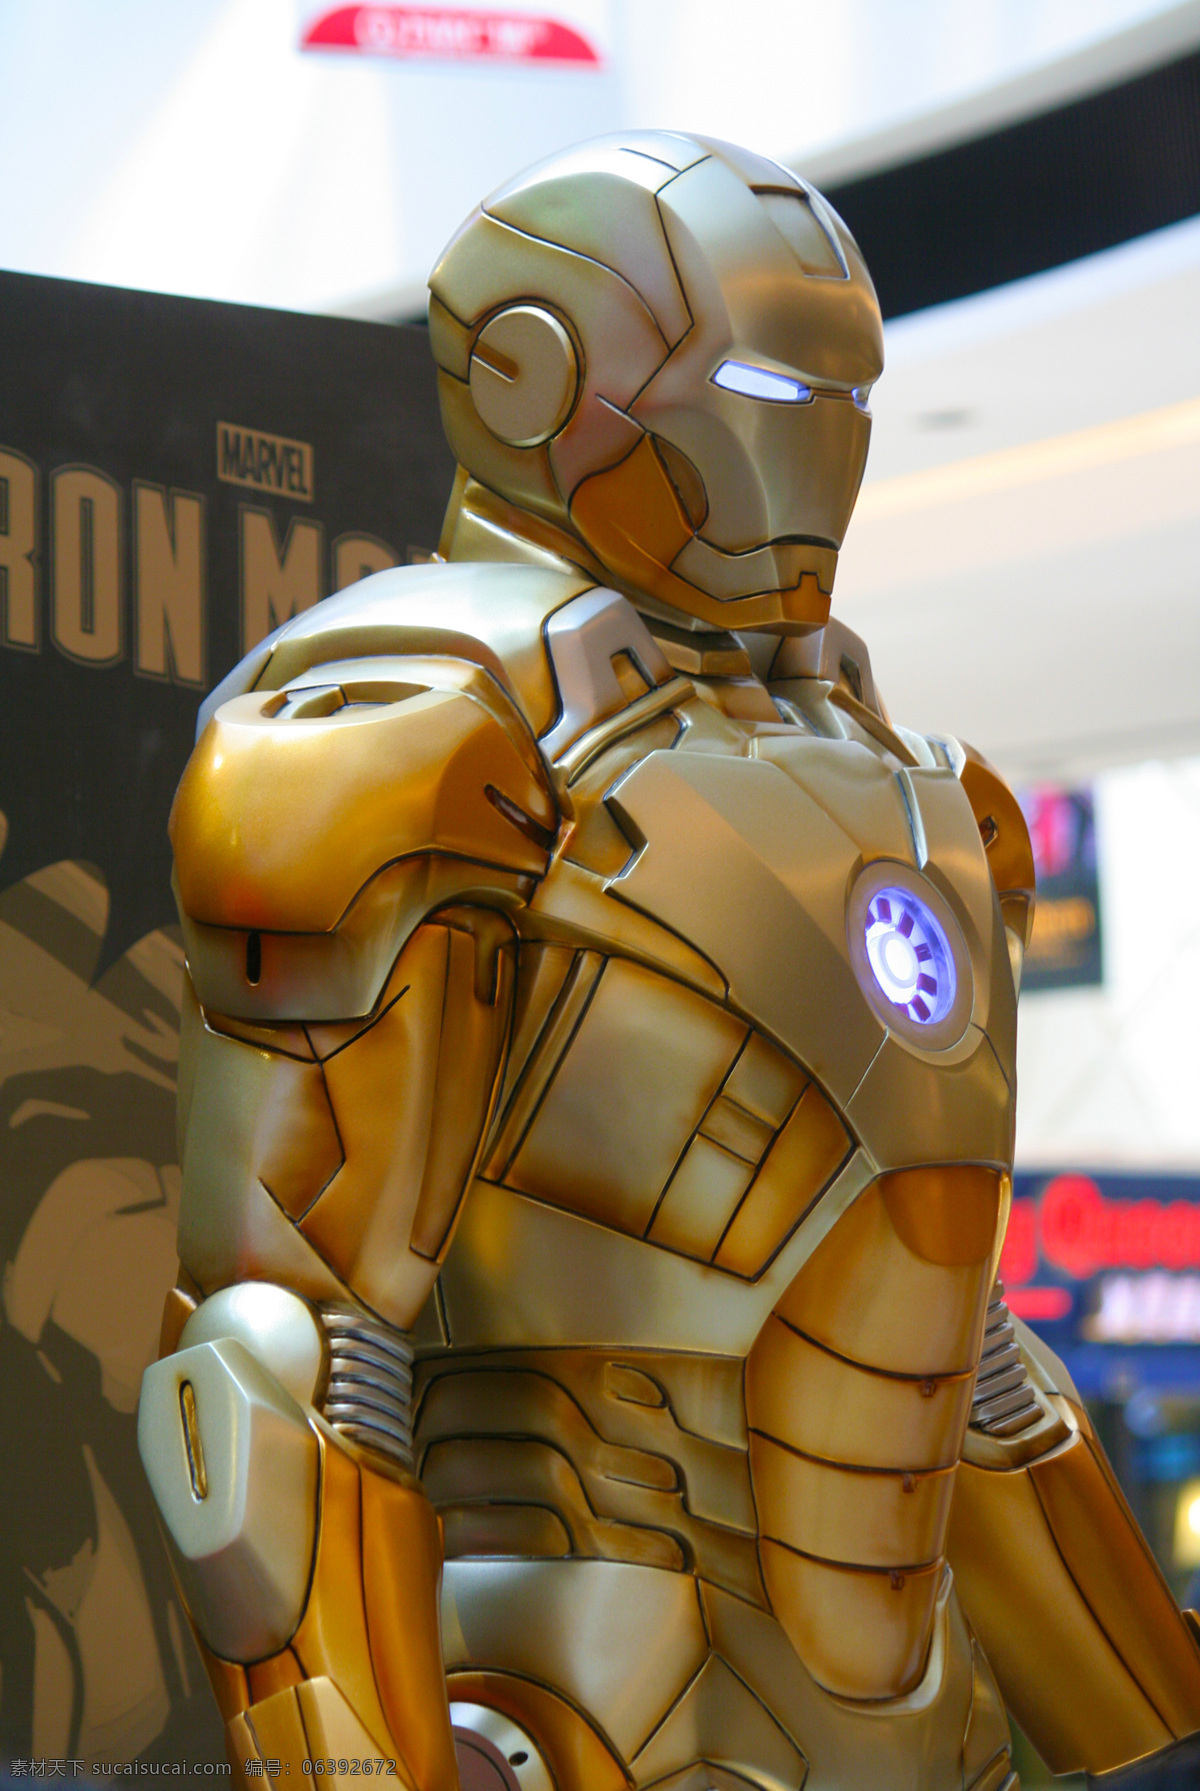 钢铁侠 机器人 生活百科 生活素材 英雄 钢铁 侠 ironman 超级英雄 美国英雄 工艺品 玩具 模型 psd源文件